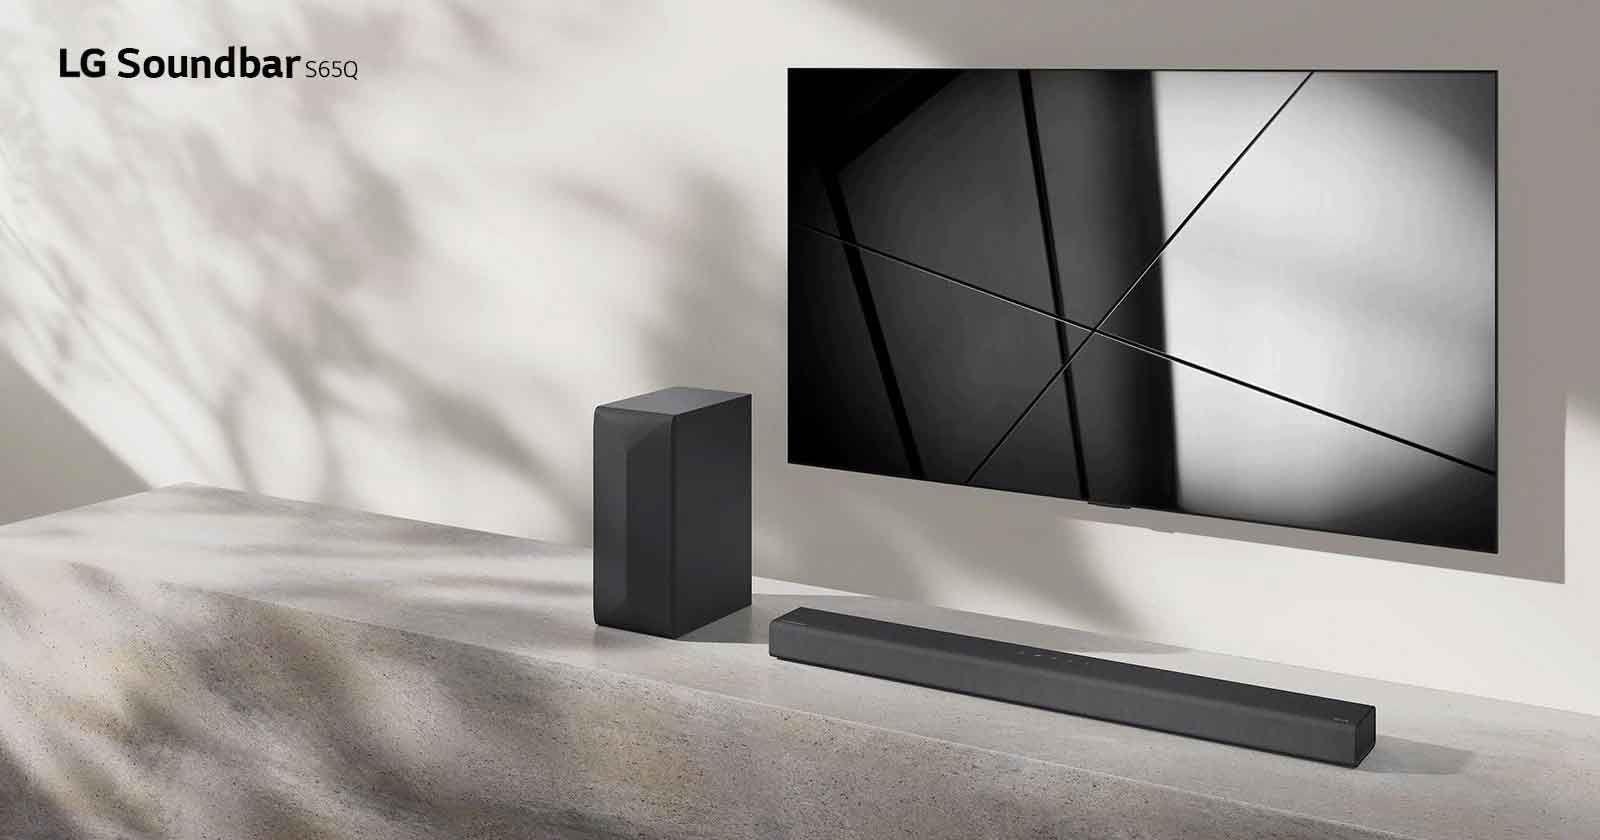 Soundbar LG S65Q i telewizor LG stoją razem w pokoju dziennym. Na ekranie włączonego telewizora jest wyświetlony czarno-biały obraz.